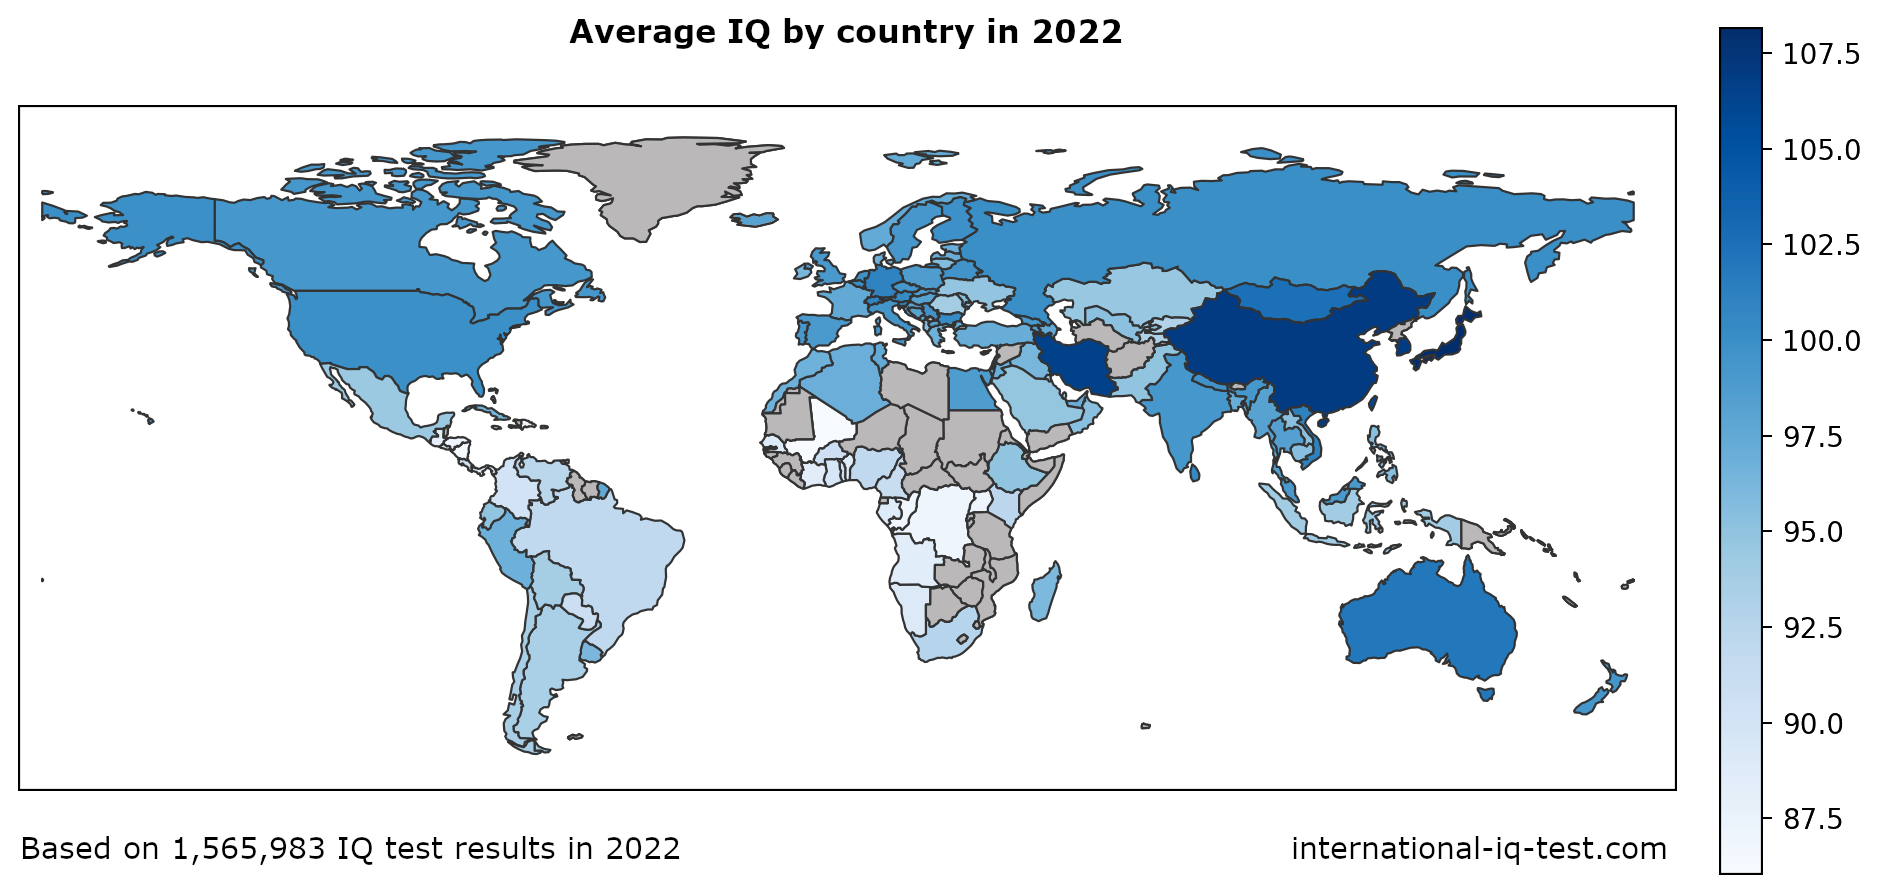 Pasaulio žemėlapis, kuriame pavaizduotas vidutinis IQ kiekvienoje šalyje 2022 m., naudojant mėlynos spalvos atspalvius nuo šviesiausio iki tamsiausio